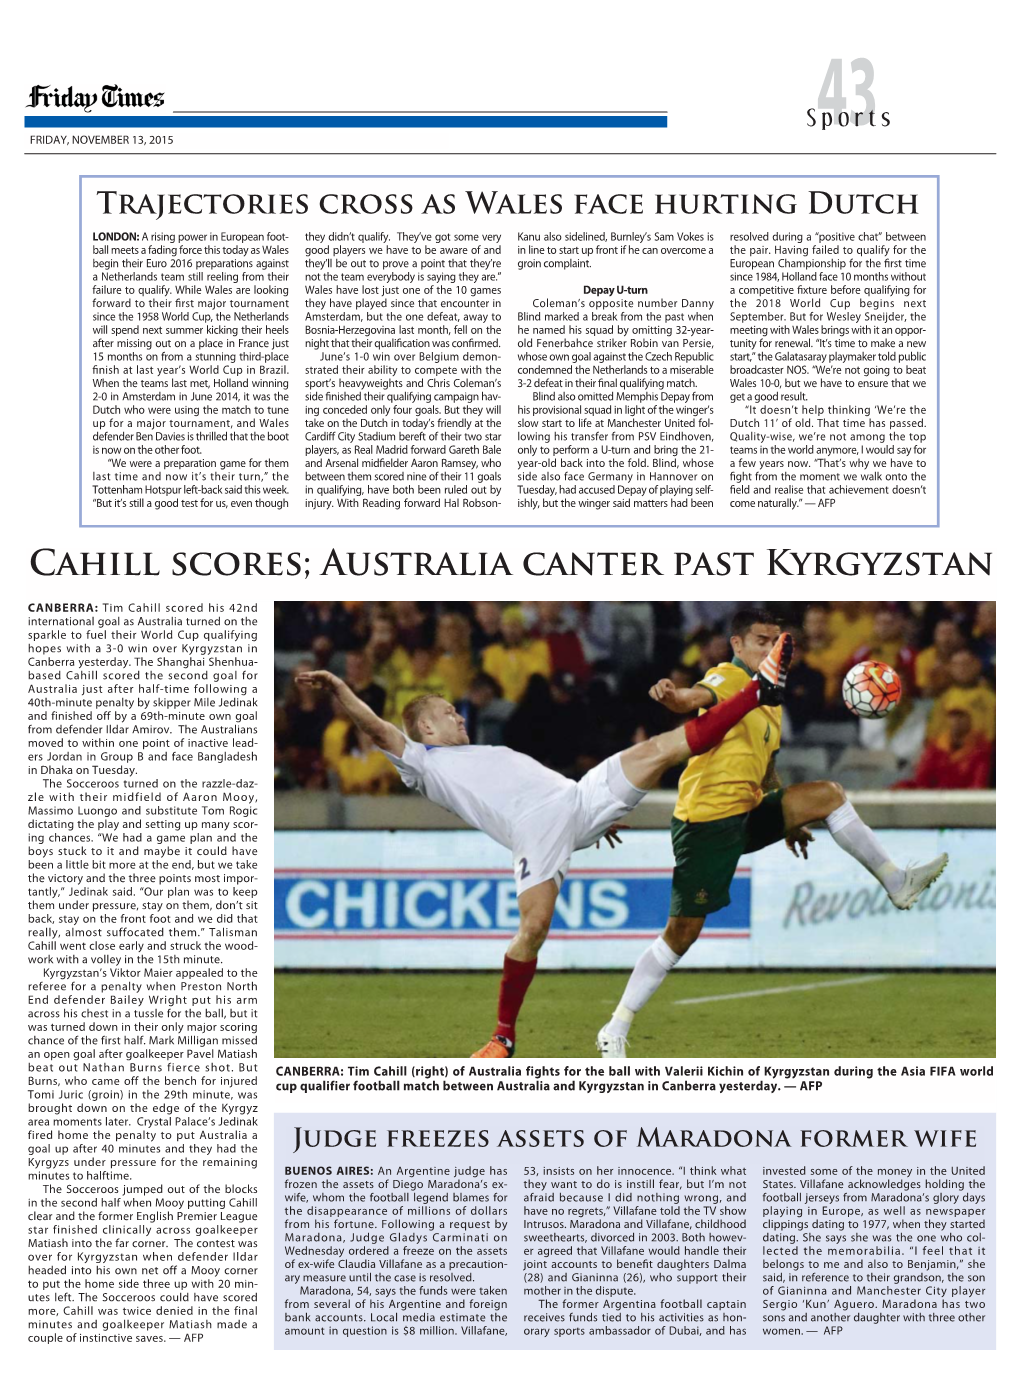 Cahill Scores; Australia Canter Past Kyrgyzstan